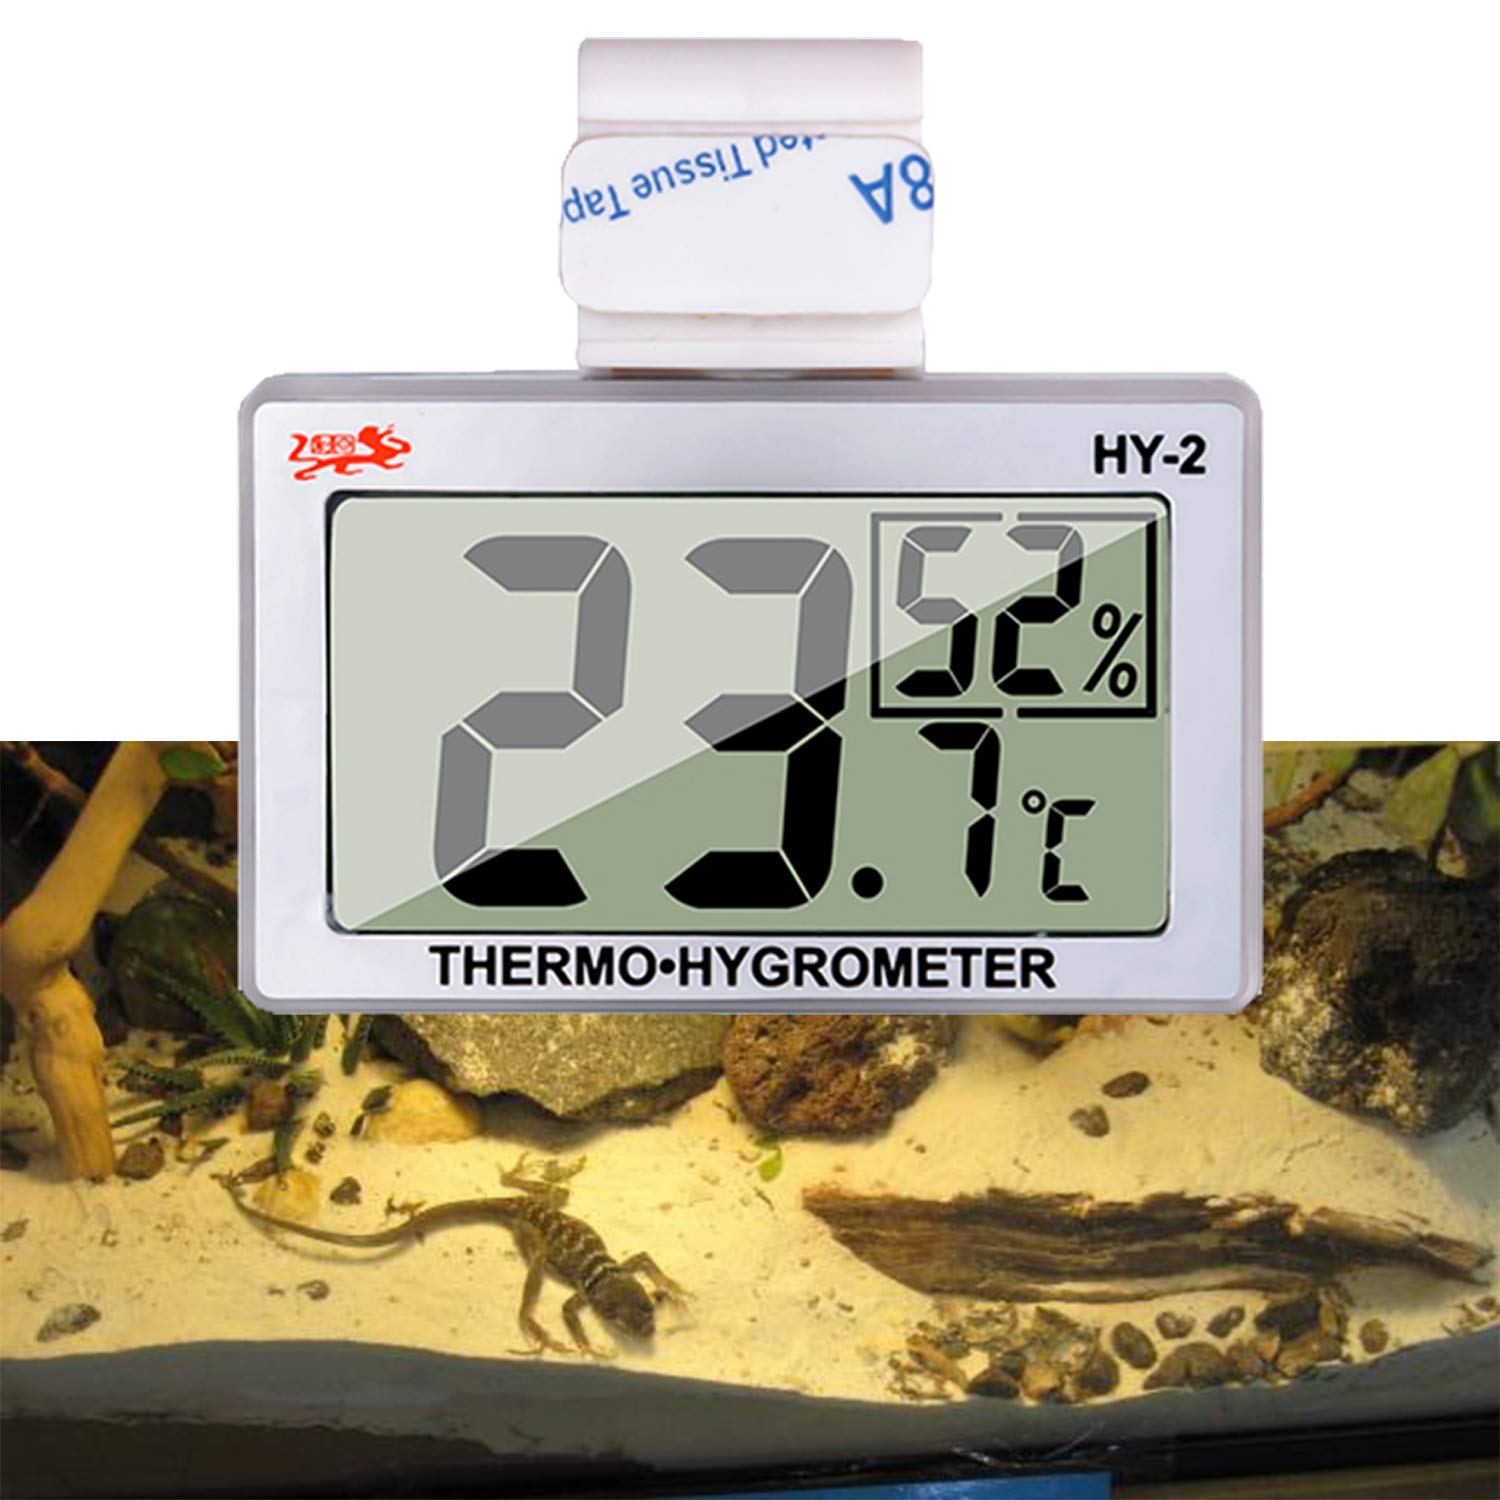 capetsma Reptile Thermometer, Digital Thermometer [...]